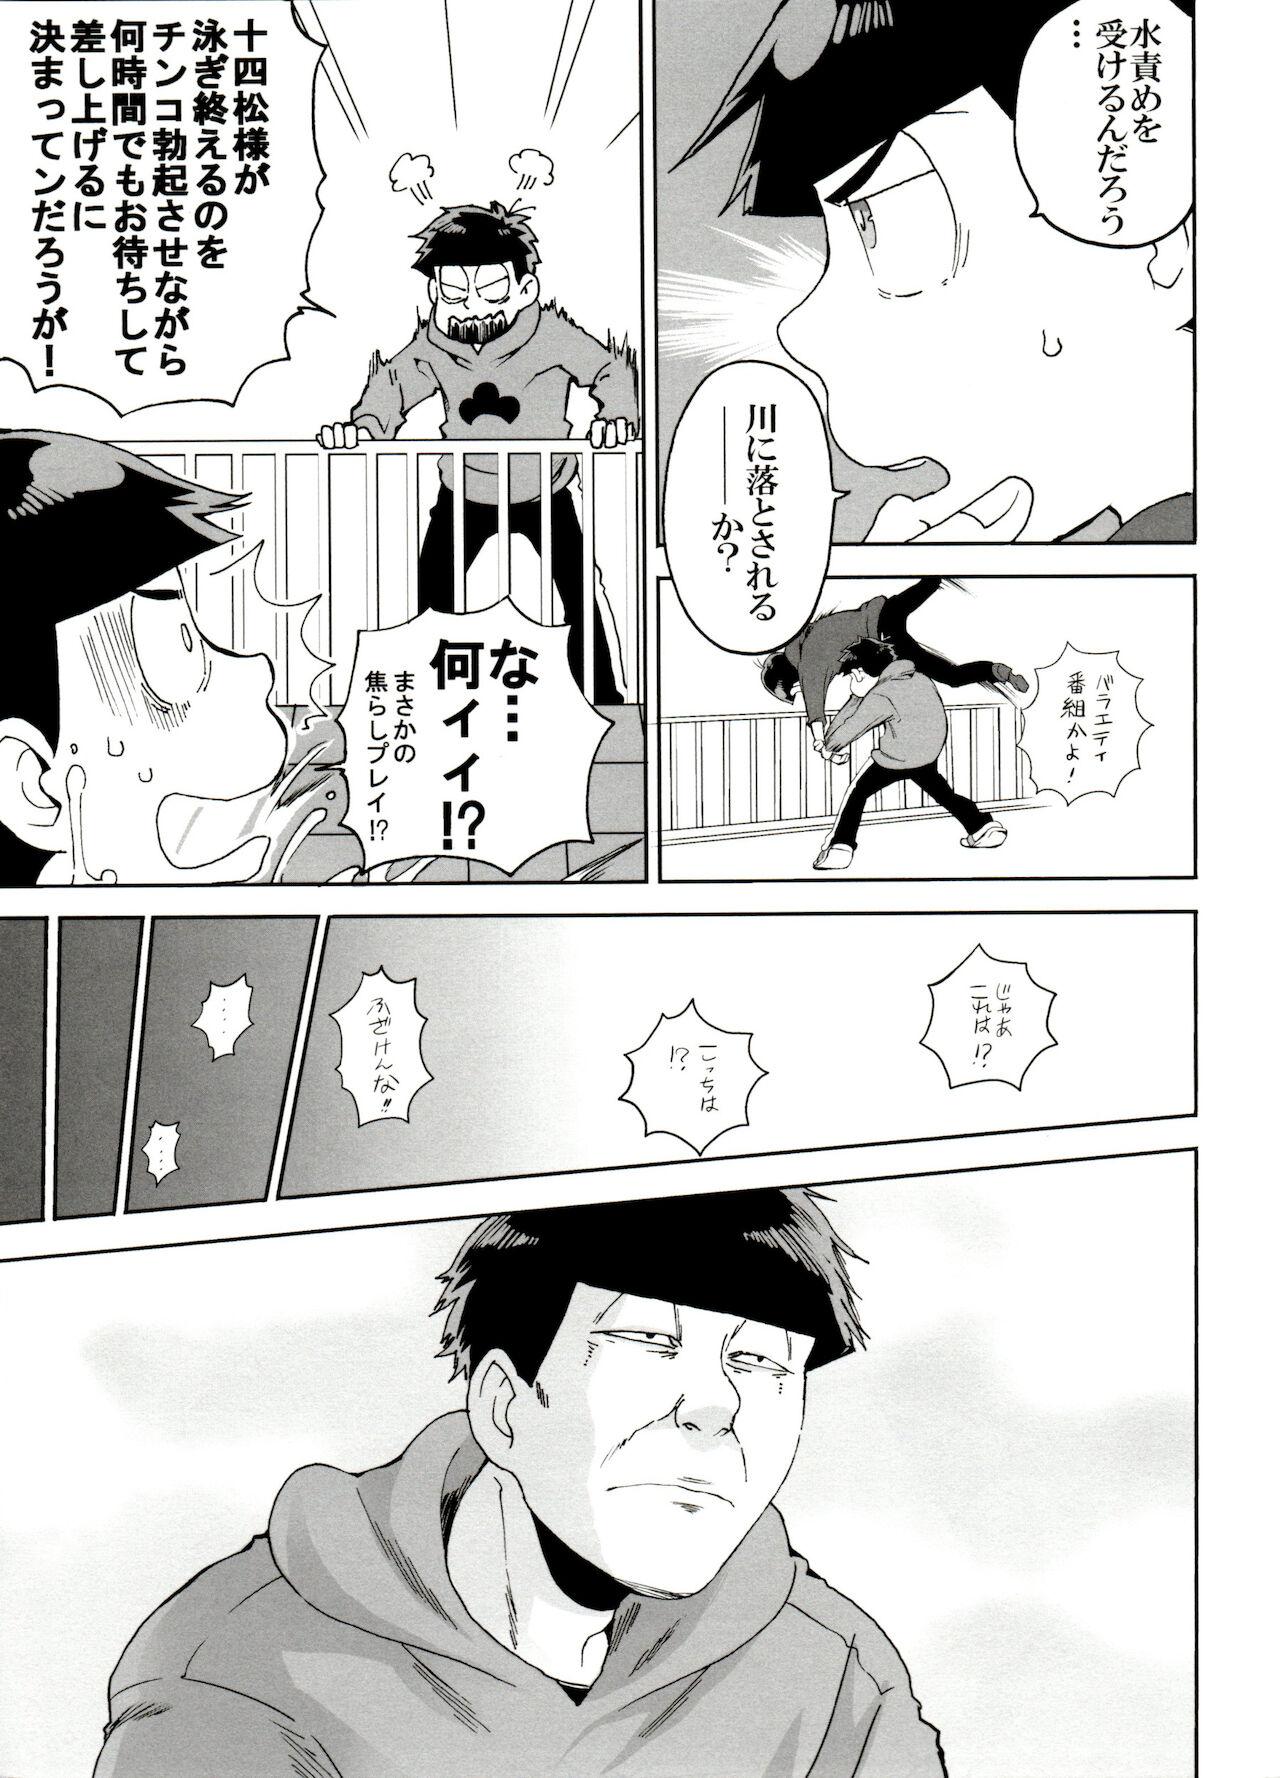 Couple Fucking SM Matsu 2 - Osomatsu san Leaked - Page 11